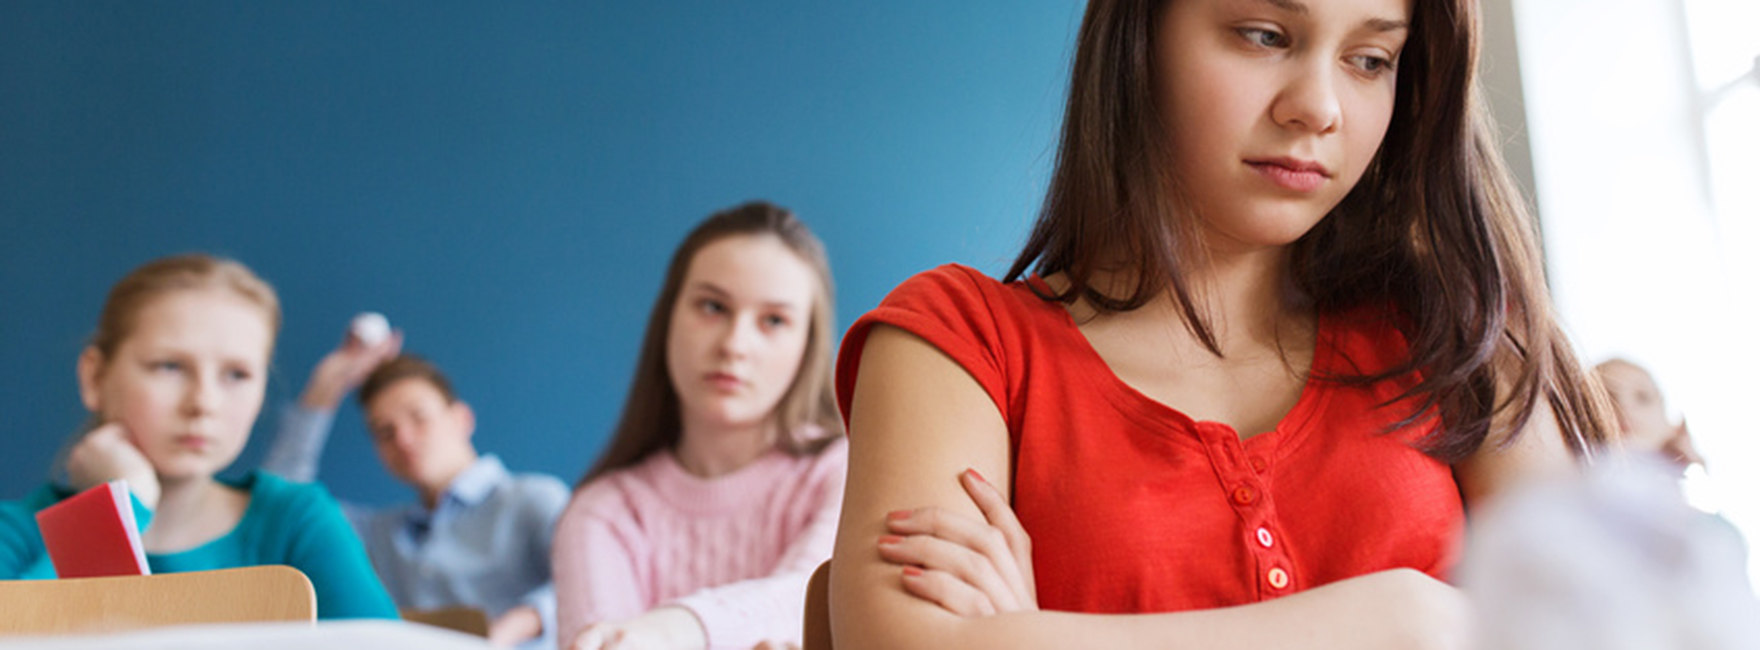 Eine Schülerin (Teenager) sitzt mit bedrücktem Gesichtsausdruck auf der Schulbank, hinter hier zwei Klassenkameradinnen, die besorgt zu ihr blicken